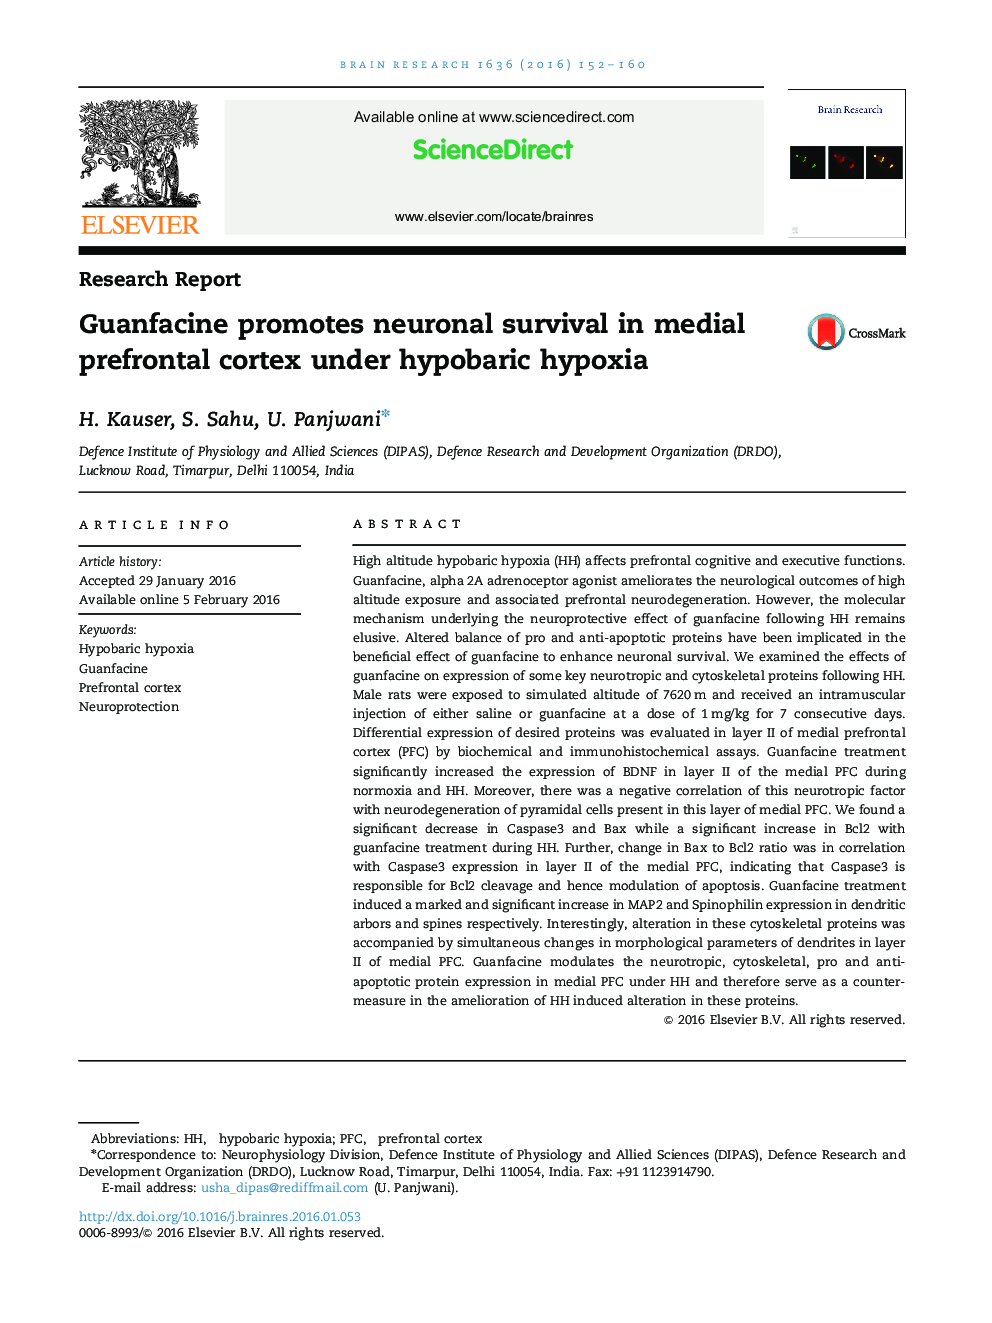 Research ReportGuanfacine promotes neuronal survival in medial prefrontal cortex under hypobaric hypoxia